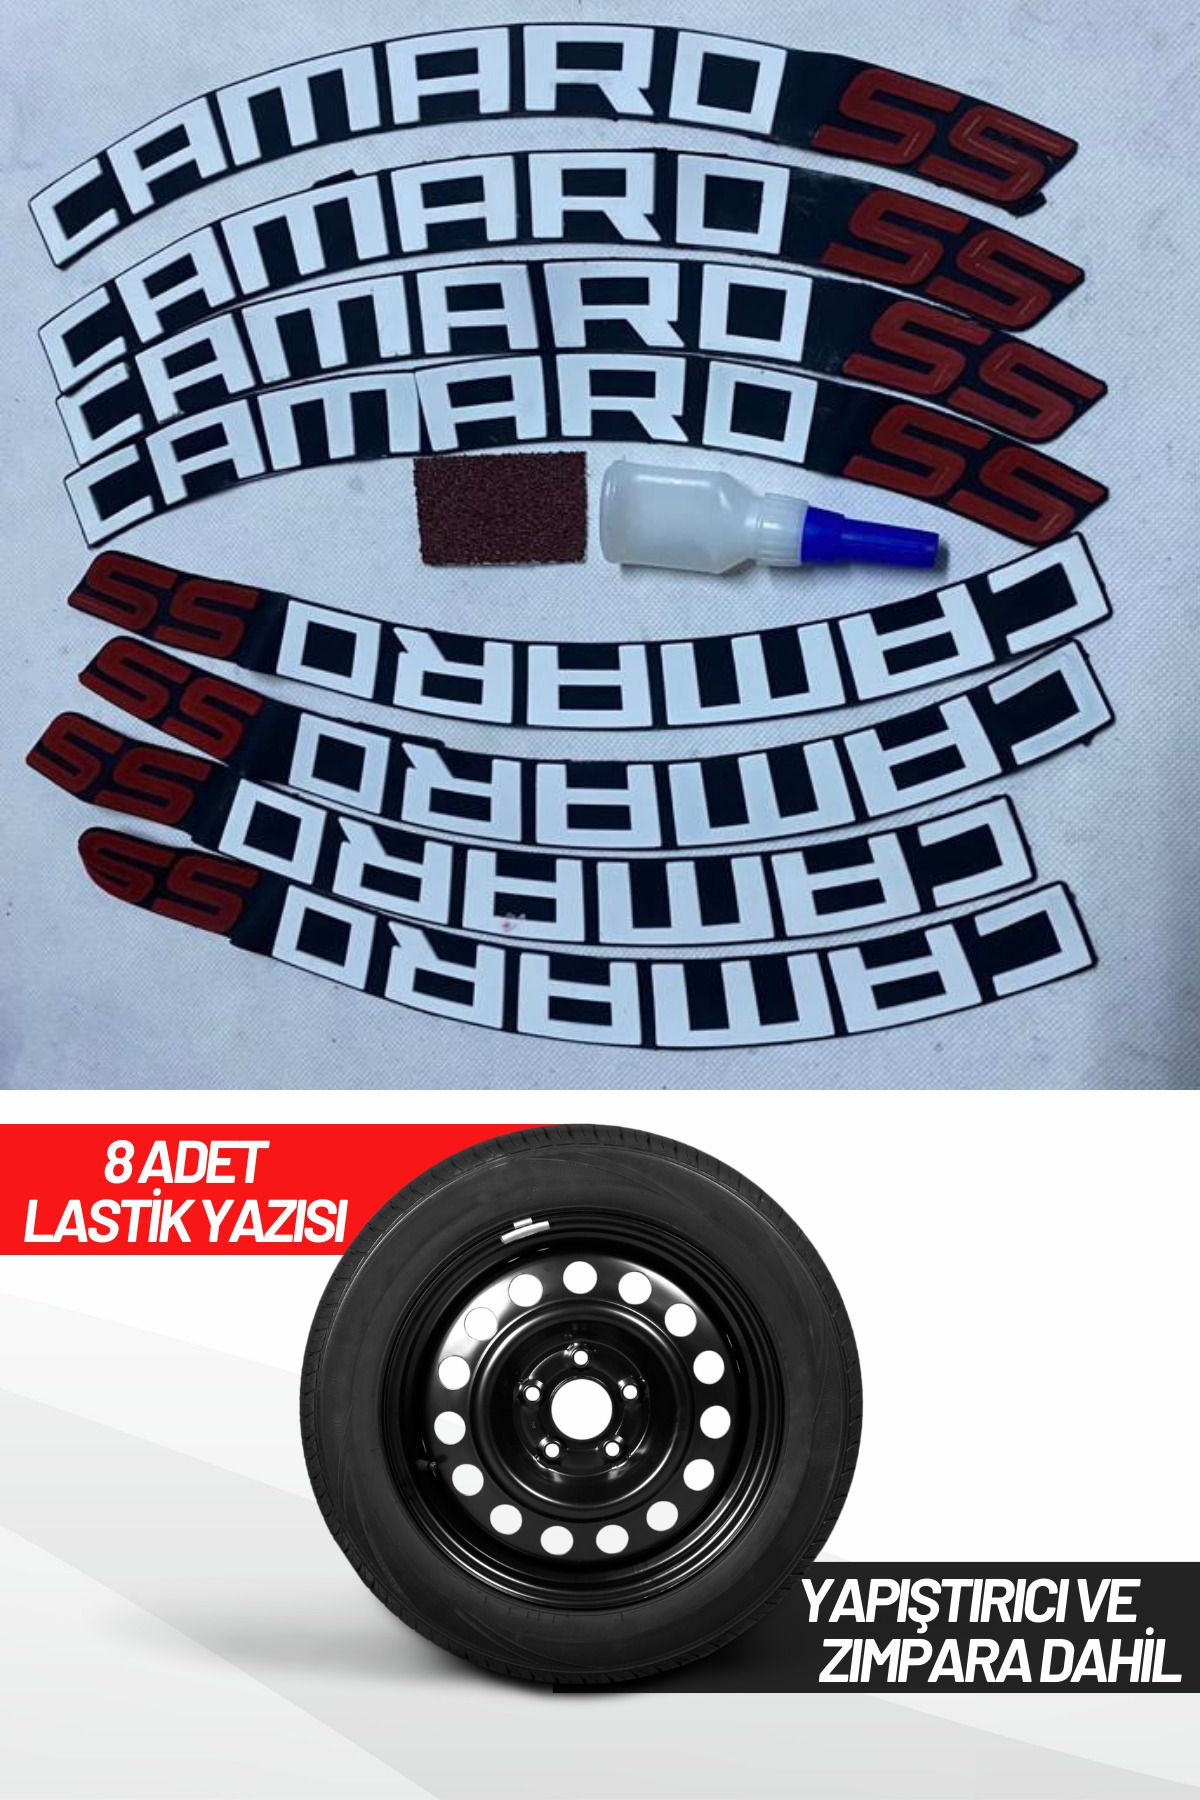 ASTUNİNG Camaro 55 Motosiklet Ve Otomobil Araç 3d Oto Lastik Yazısı Sticker Arma 8 Adet Kırmızı Beyaz